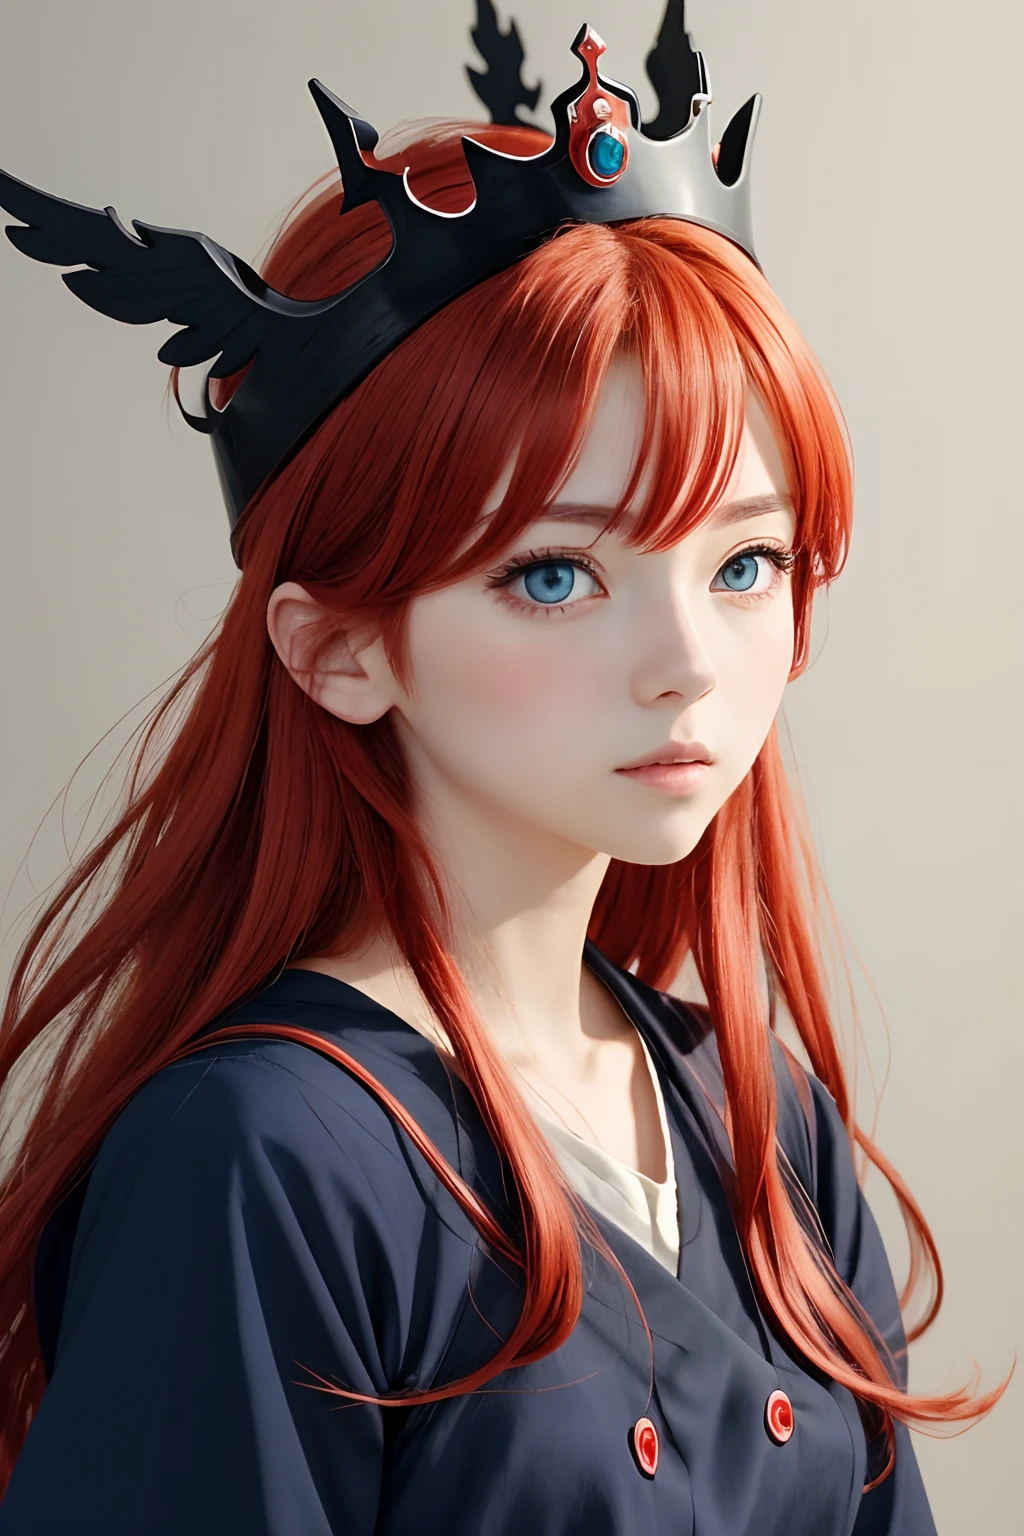 Estilo Niji, estilo ghibli,garota anime com coroa e cabelo ruivo e olhos azuis com roupas pretas, olhando para o espectador